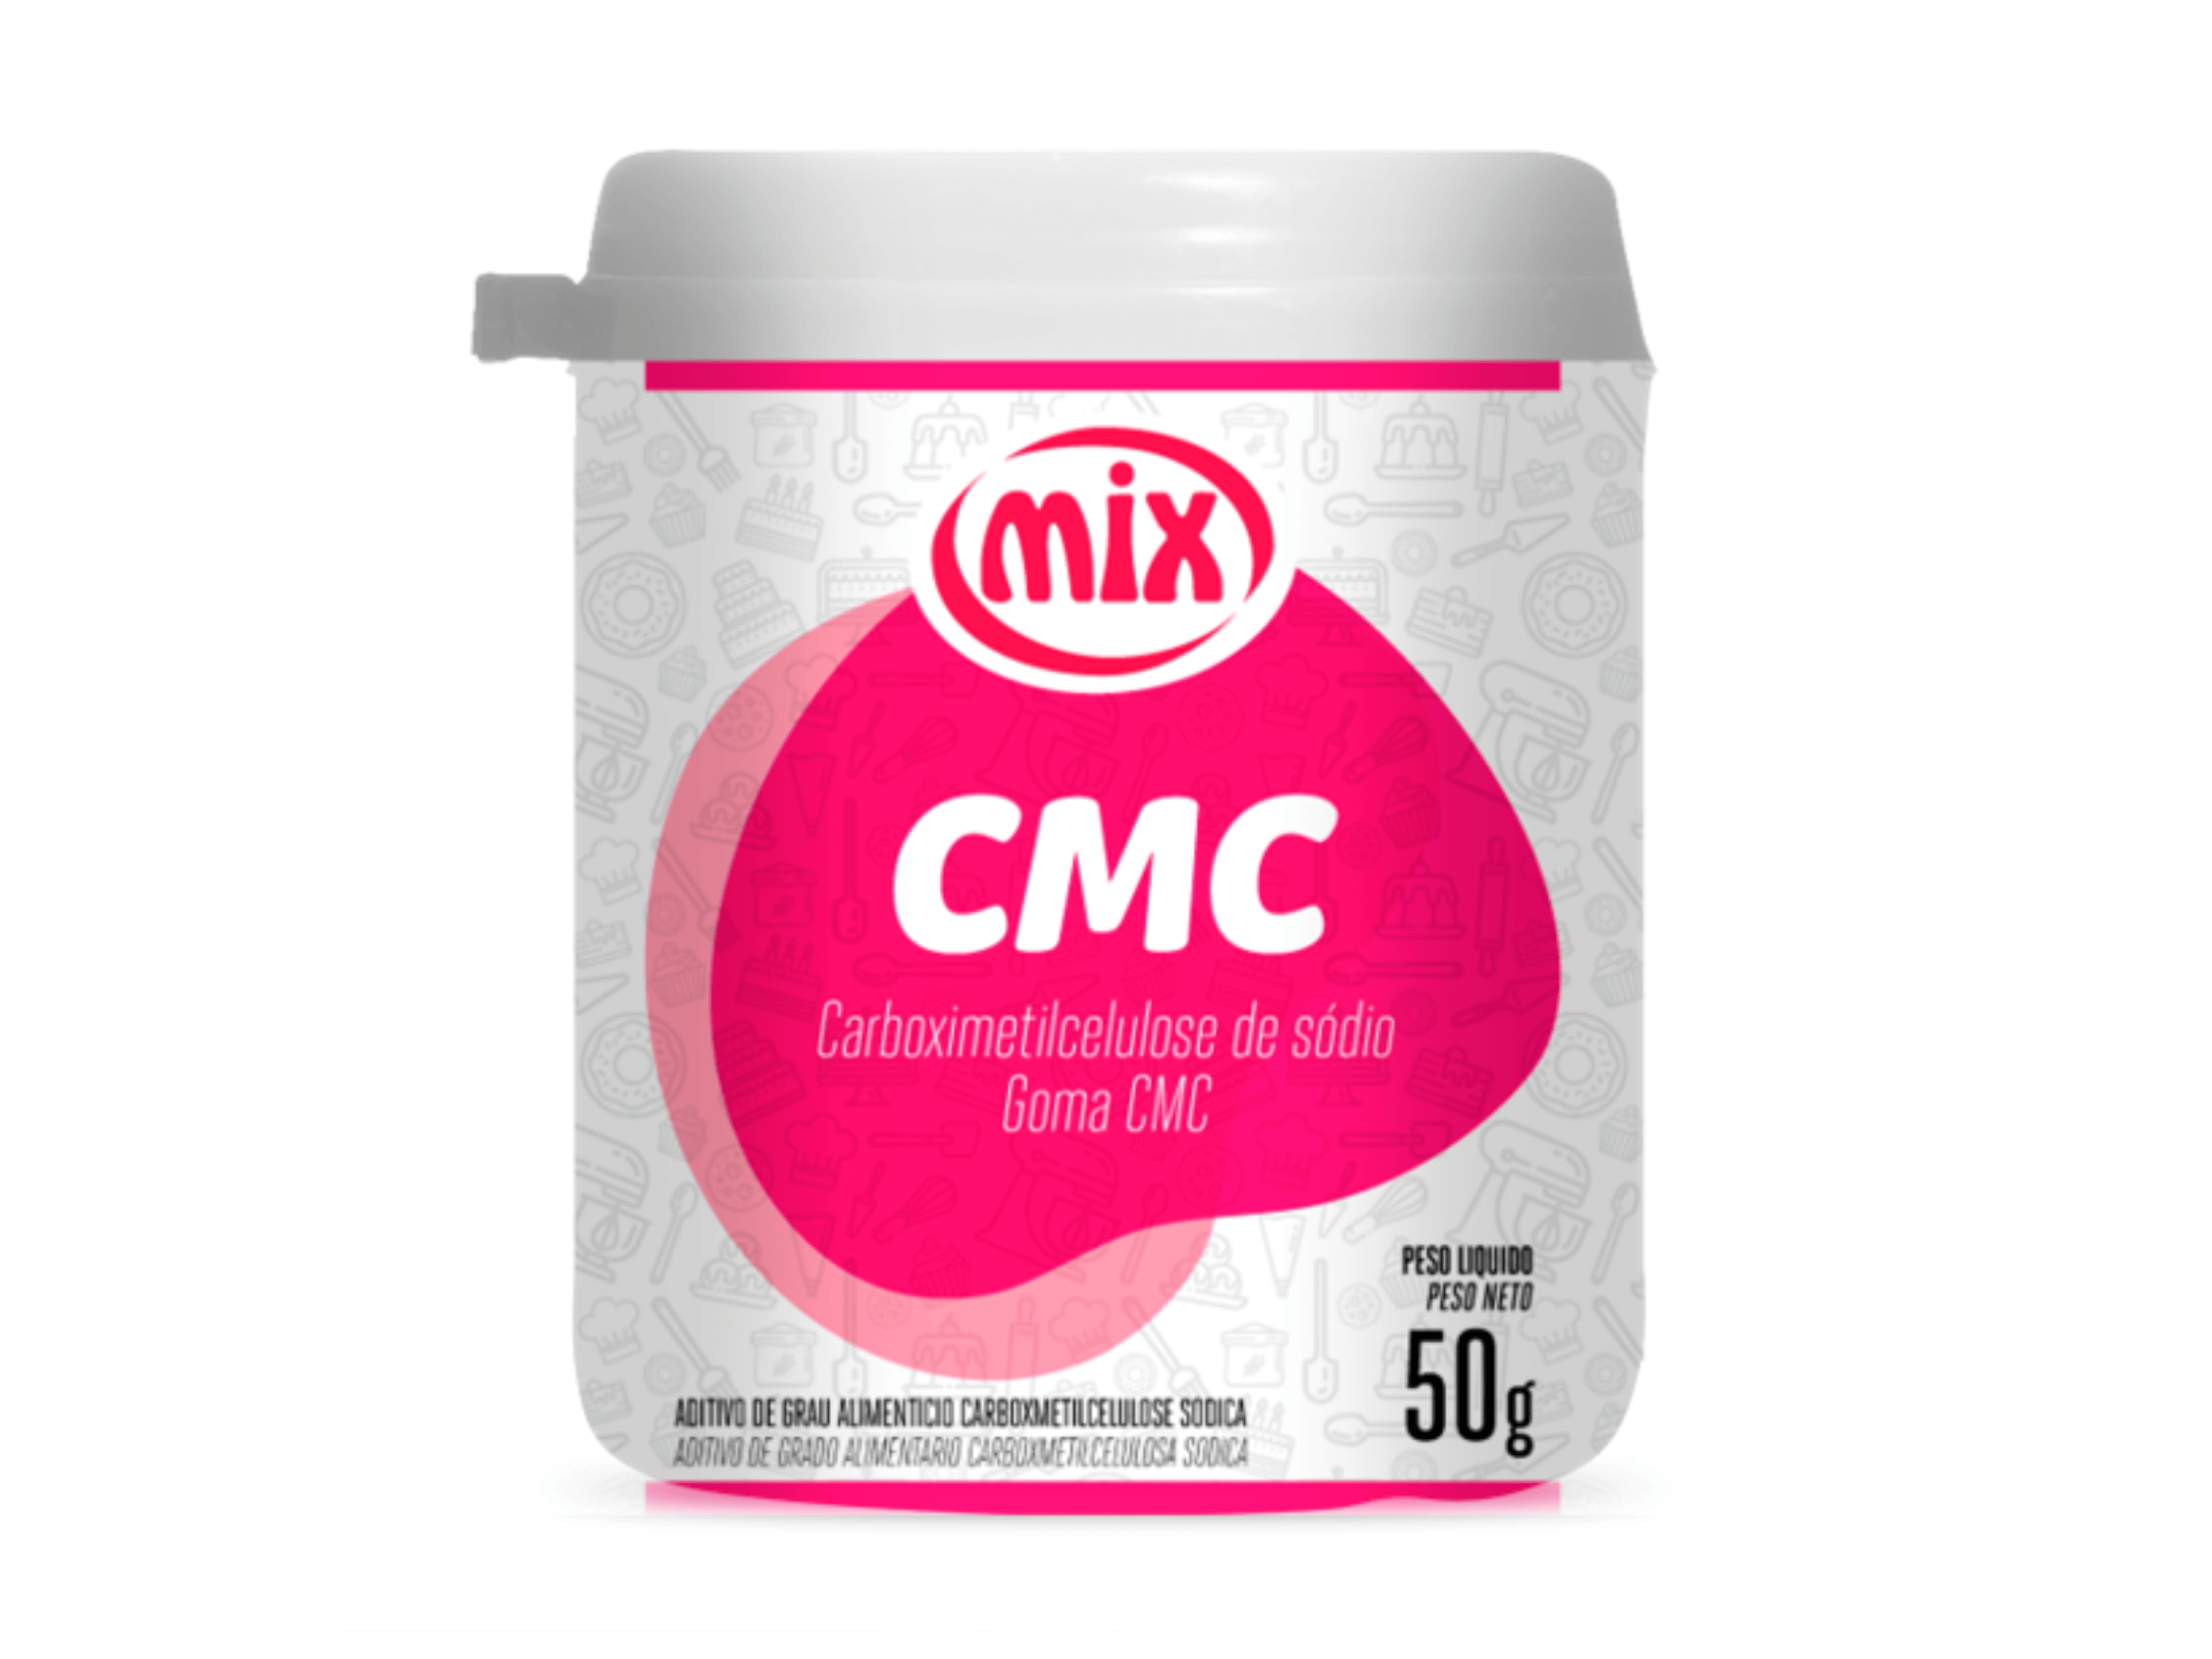 Cmc Desumidificante 50g - Mix 